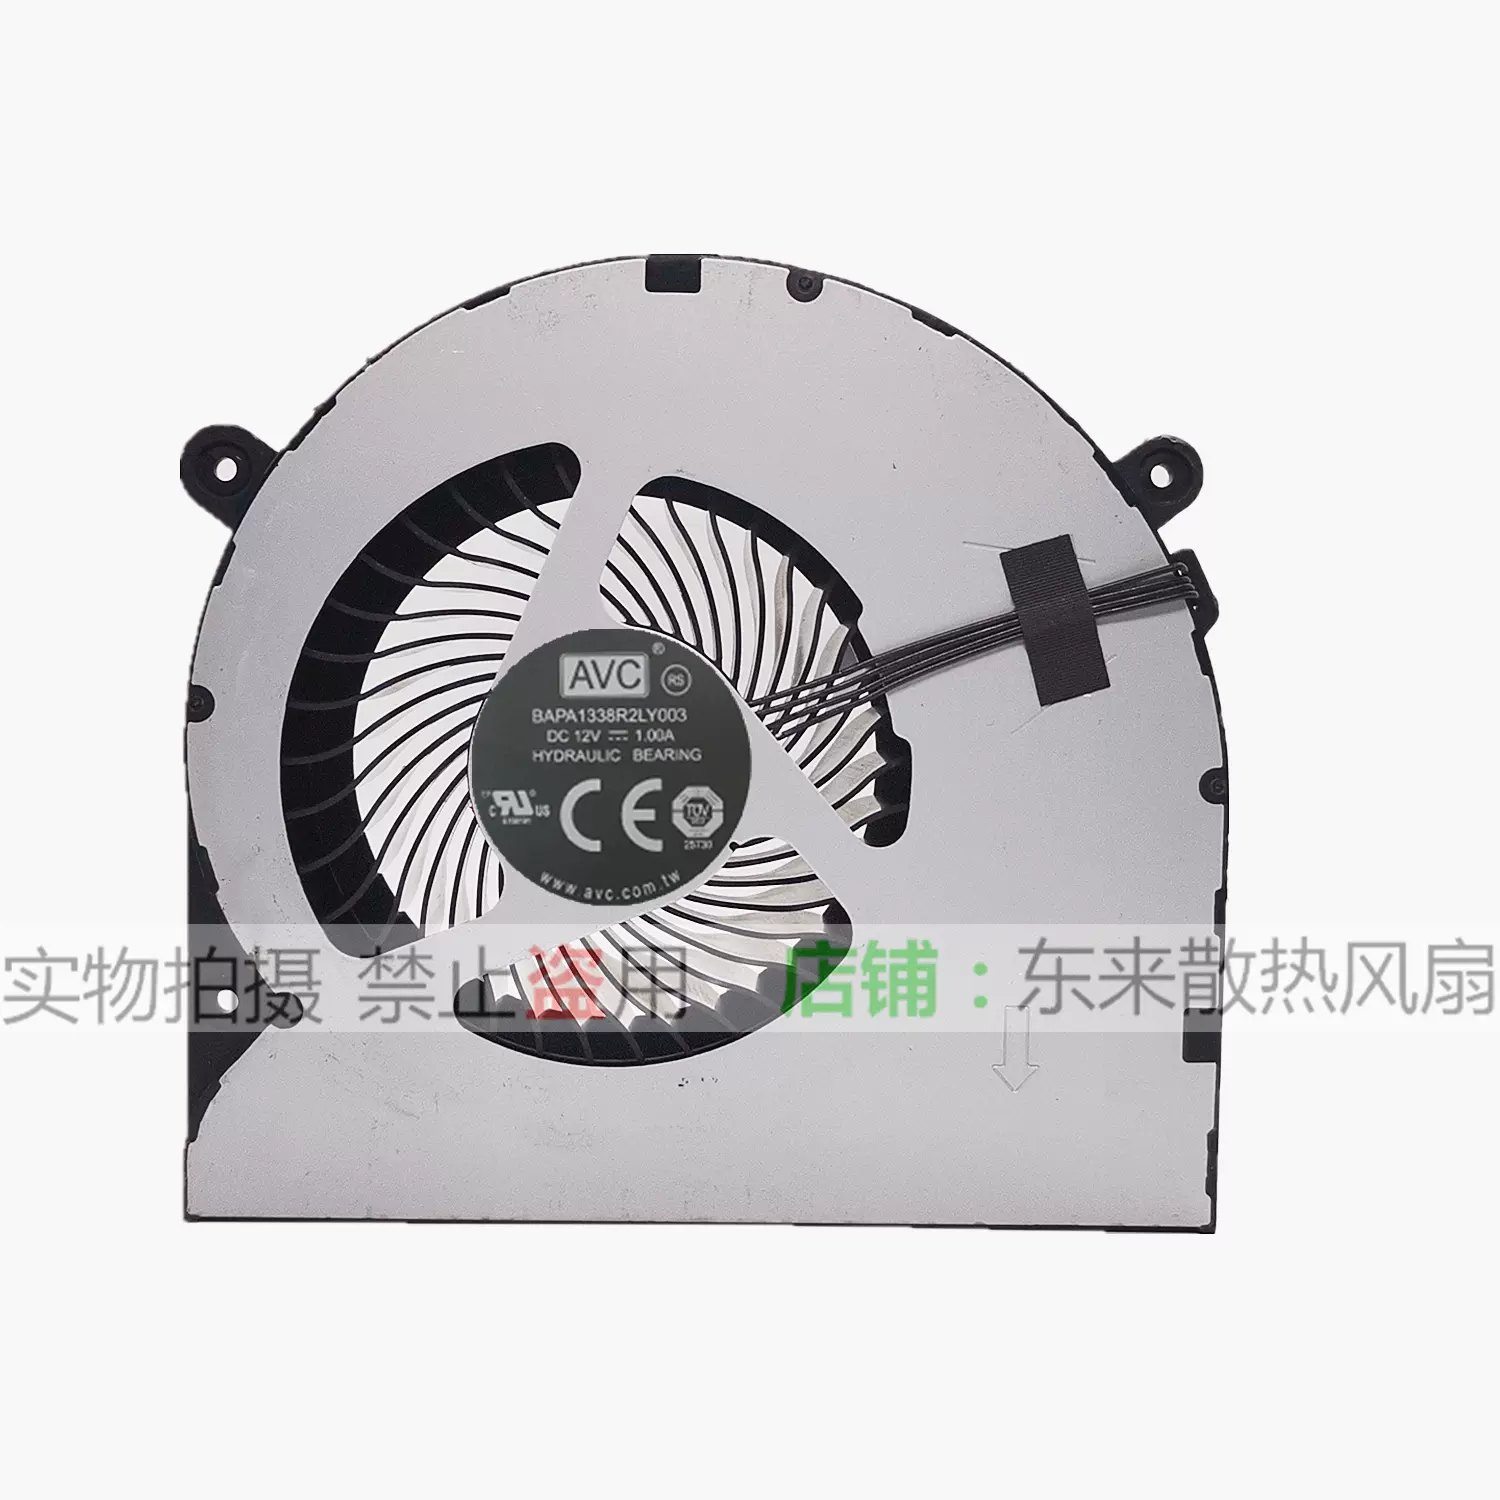 原装AVC 极米Z6 Z6X 投影仪风扇12V 0.55A BAPA0920R2H P001-Taobao